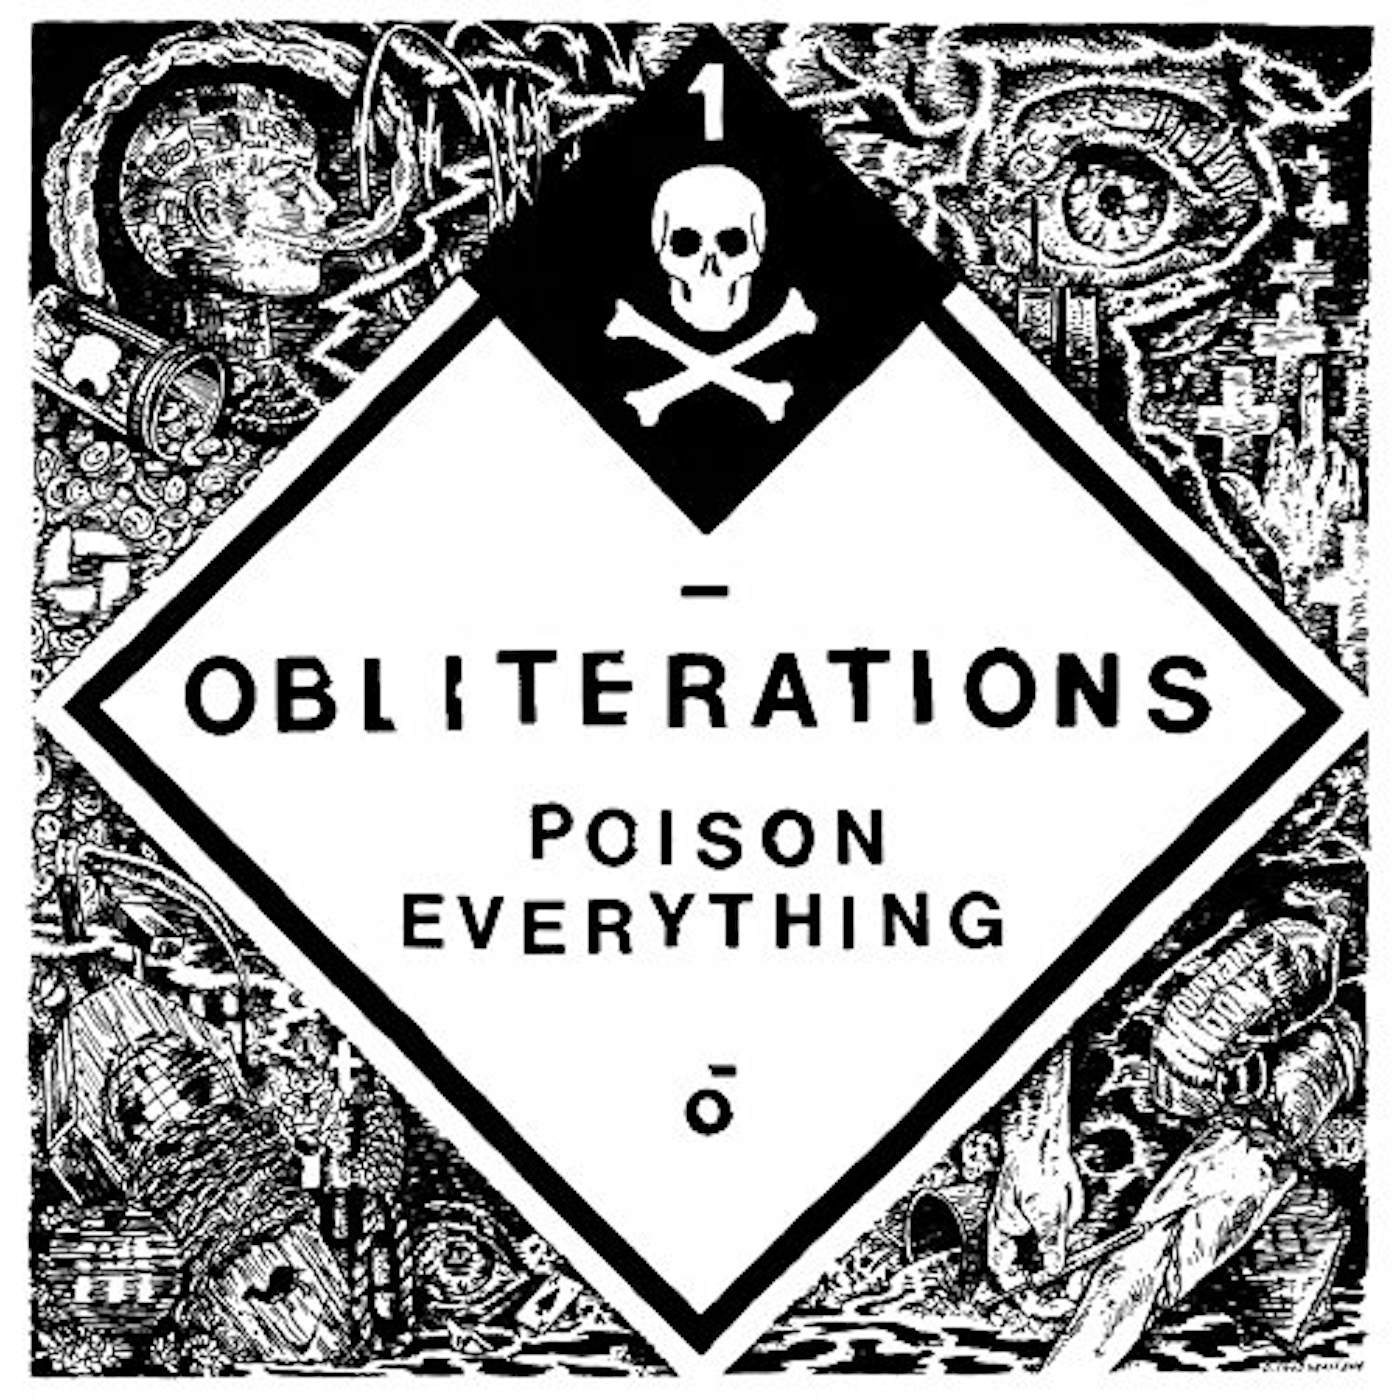 Obliterations Poison Everything Vinyl Record